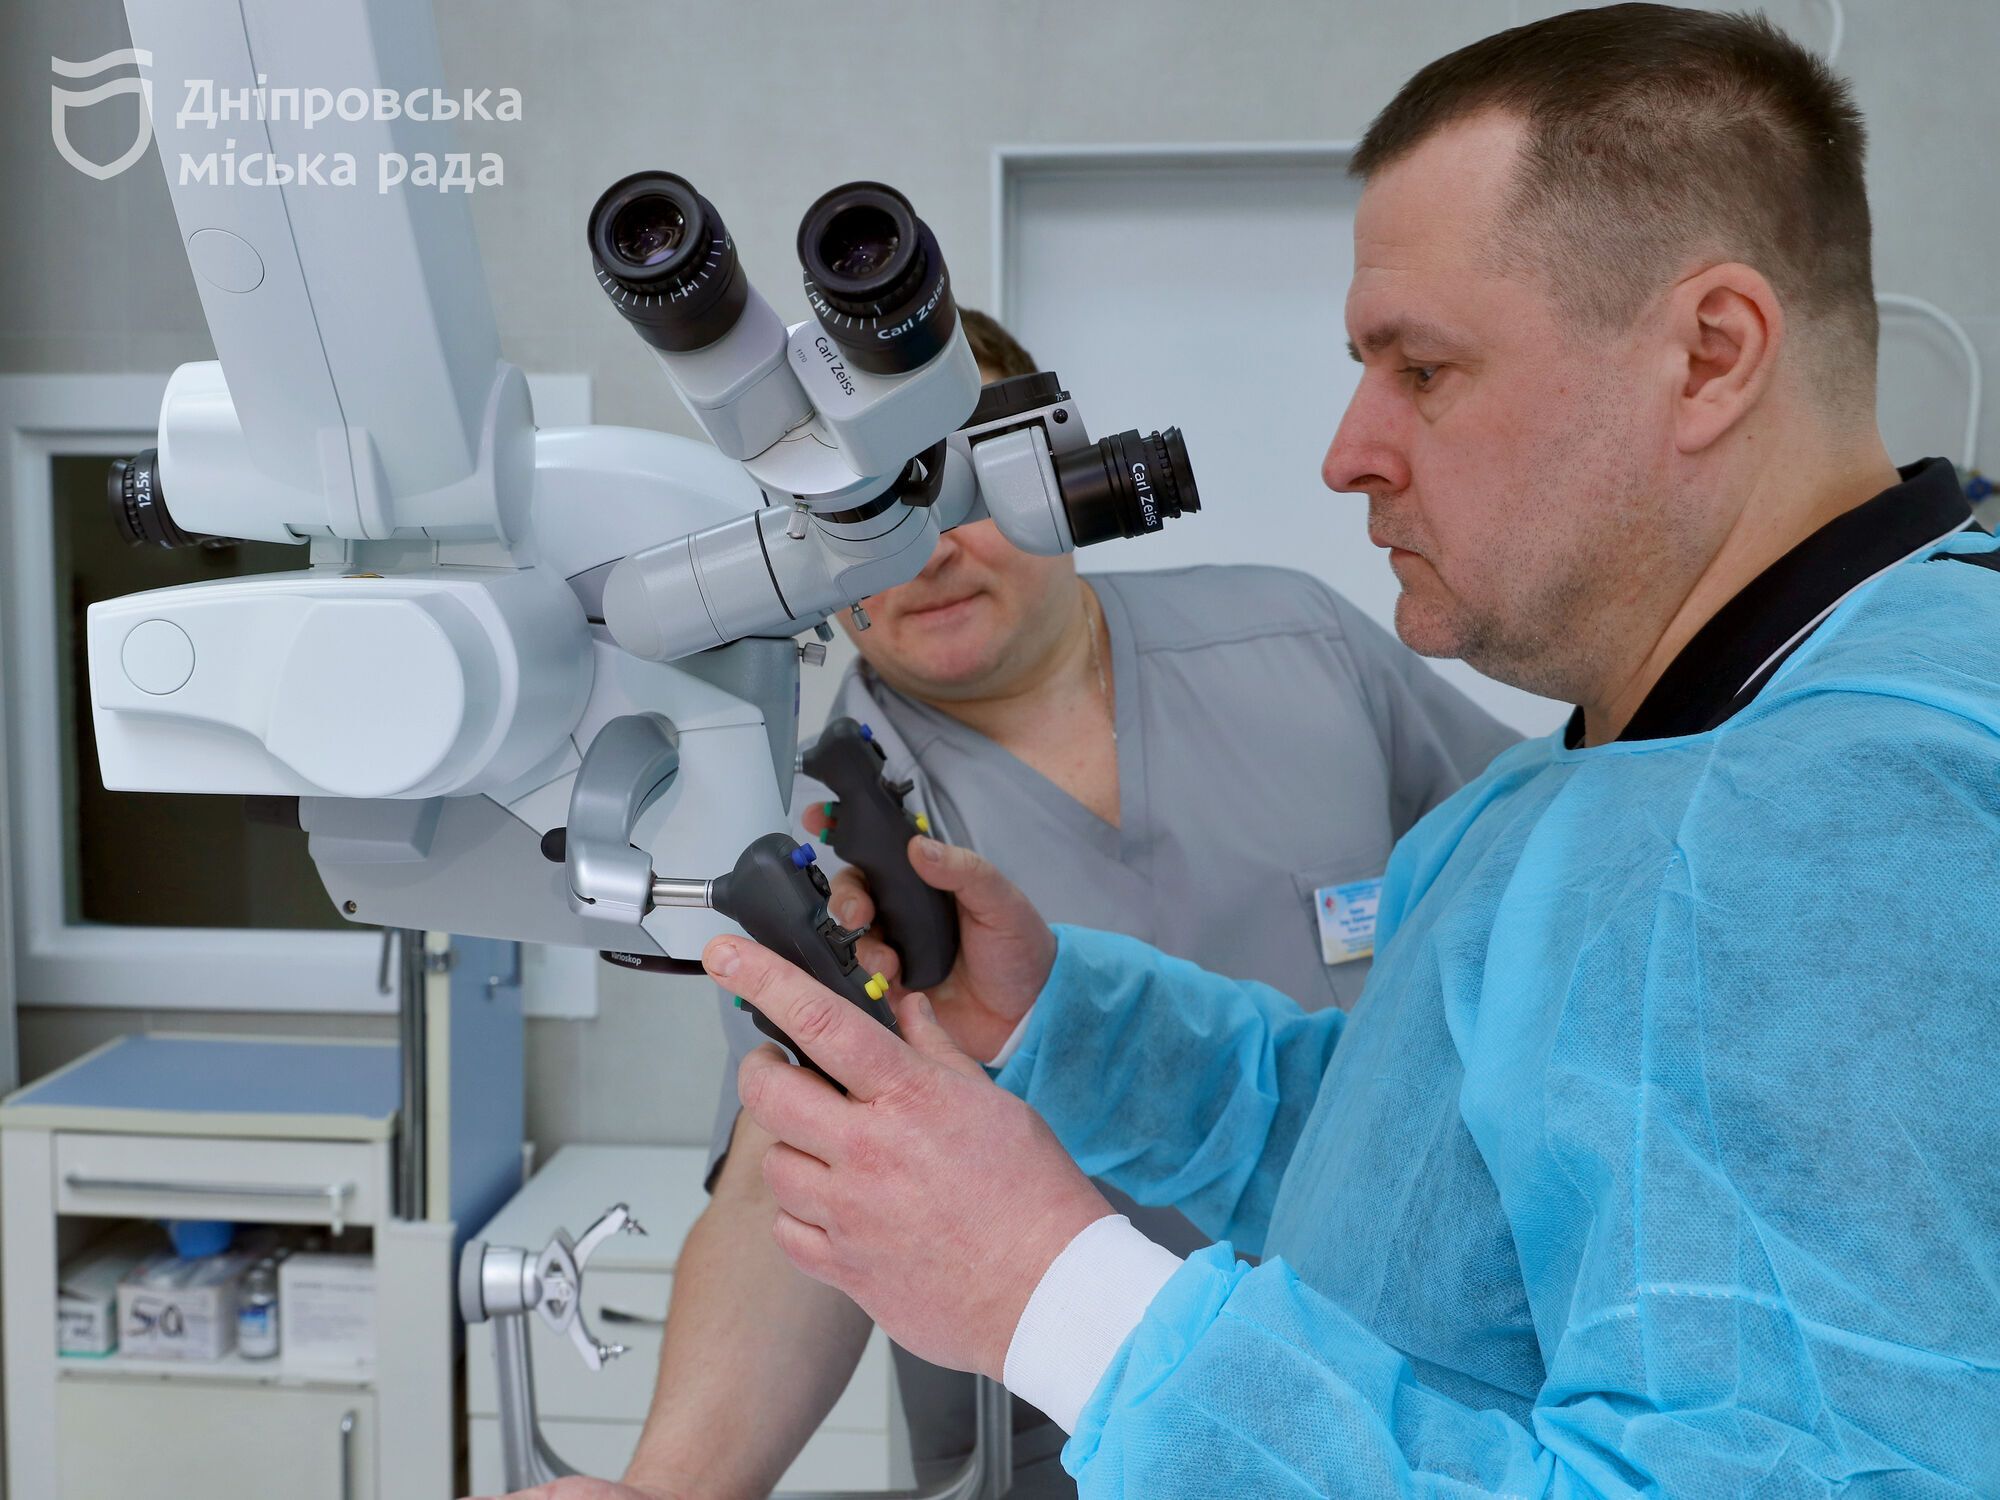 Складні операції та сучасне обладнання: у 4-й міській лікарні Дніпра відкрили нейрохірургічне відділення